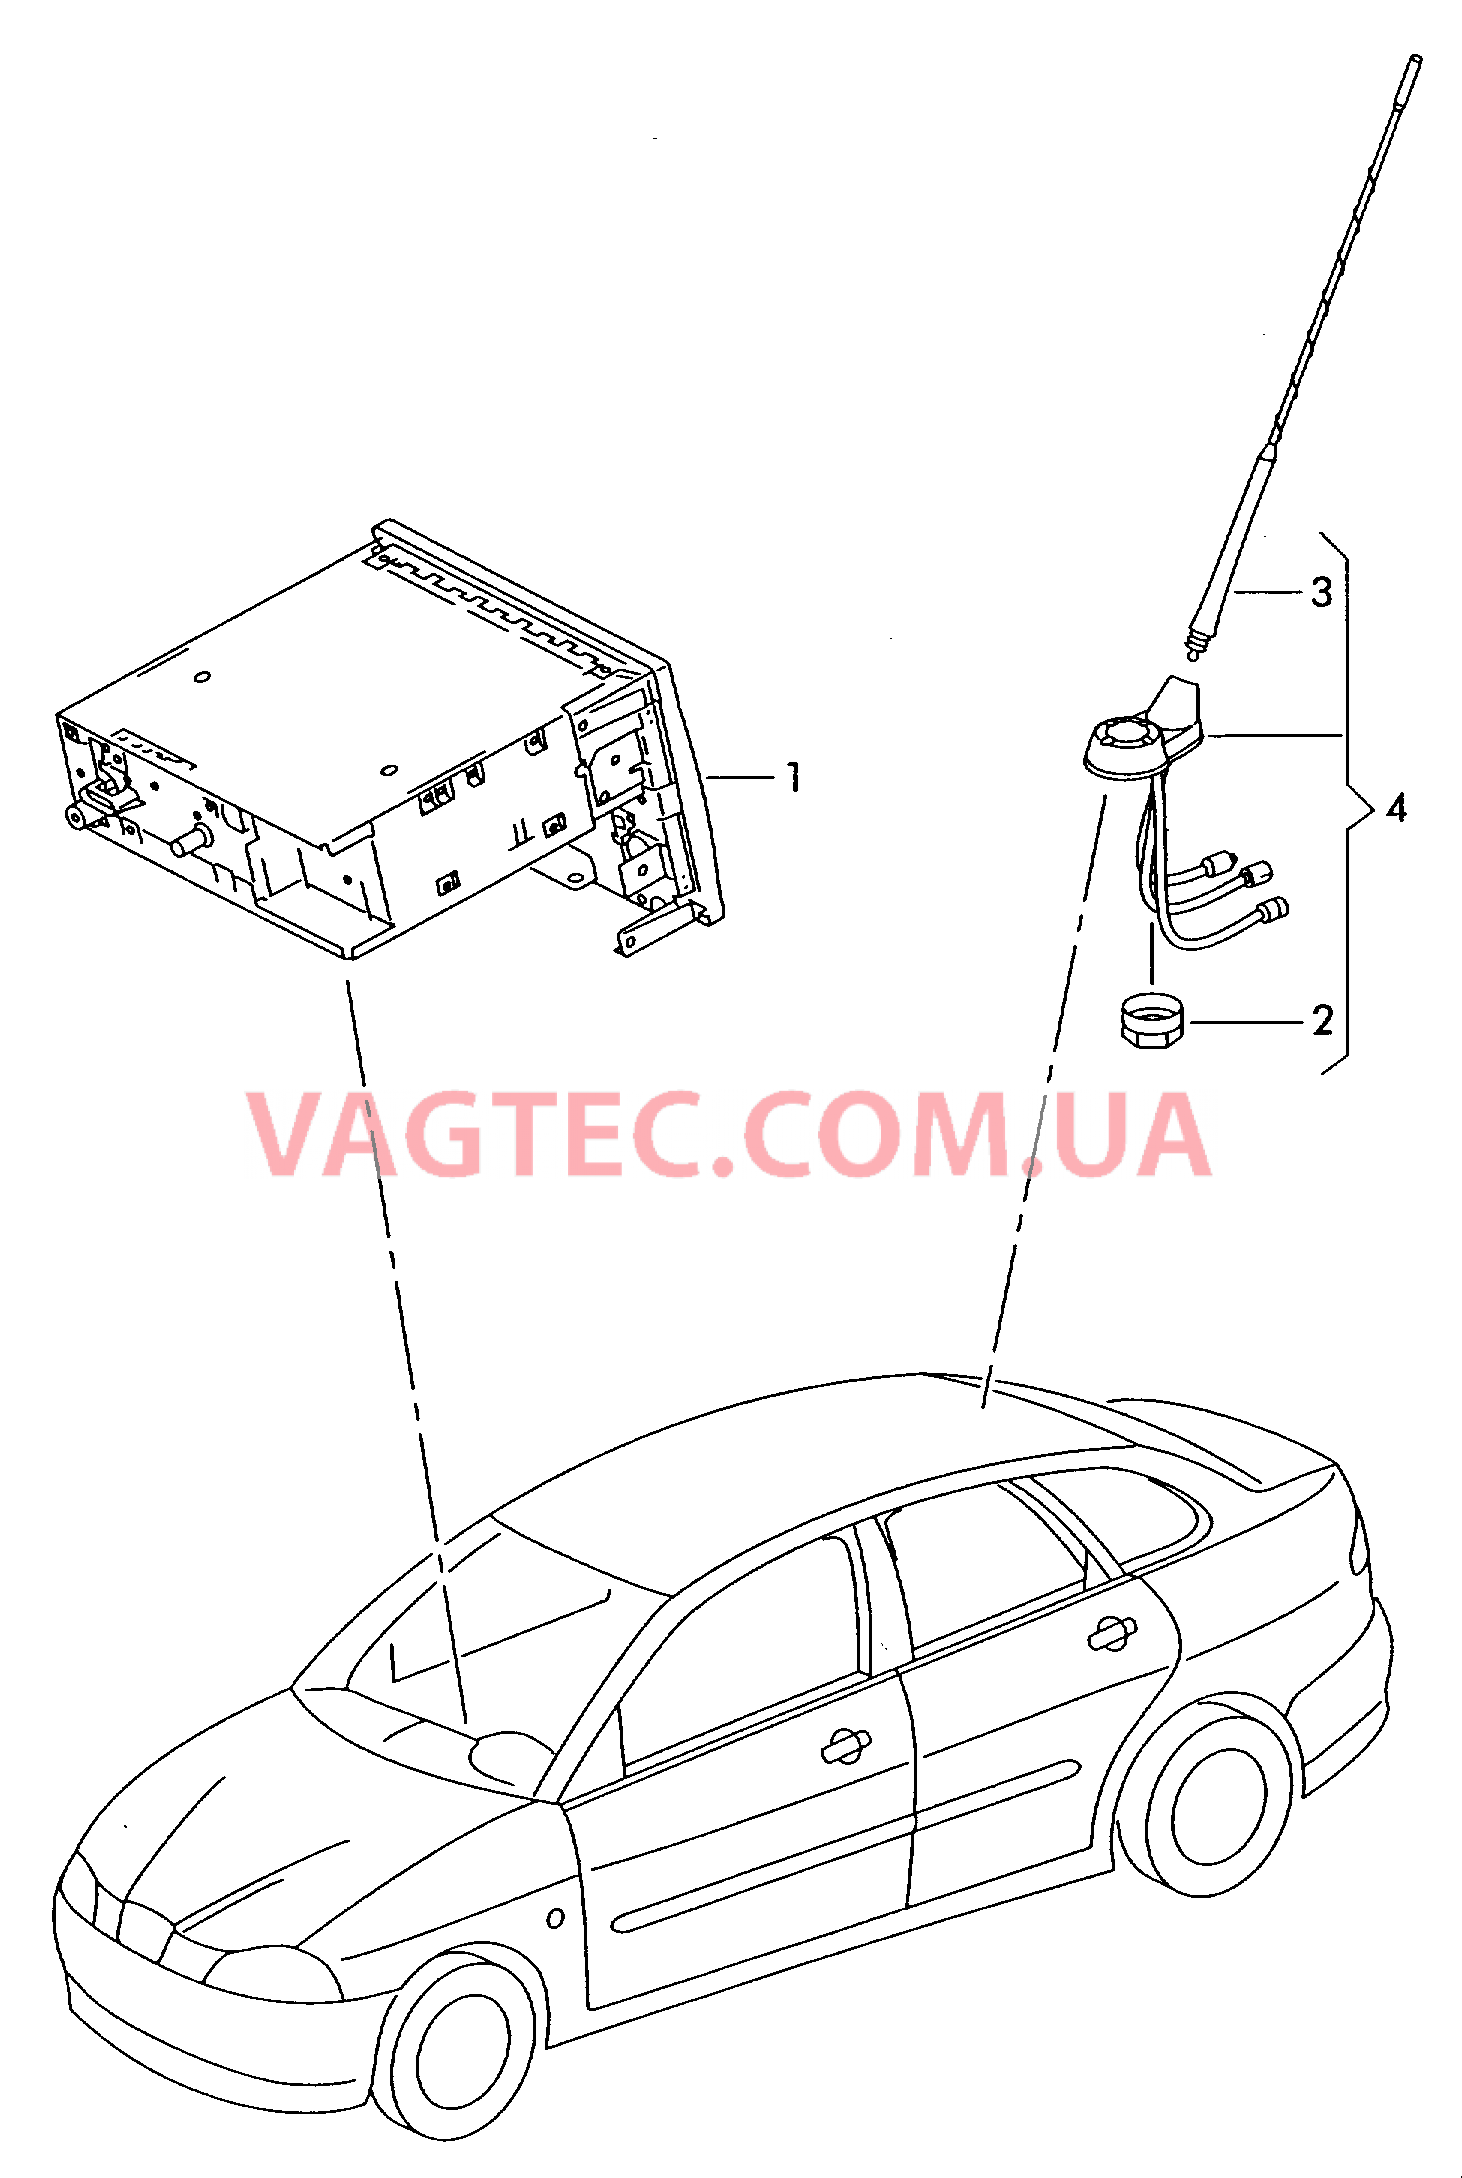 Электрические детали для системы навигации  для SEAT CO 2003